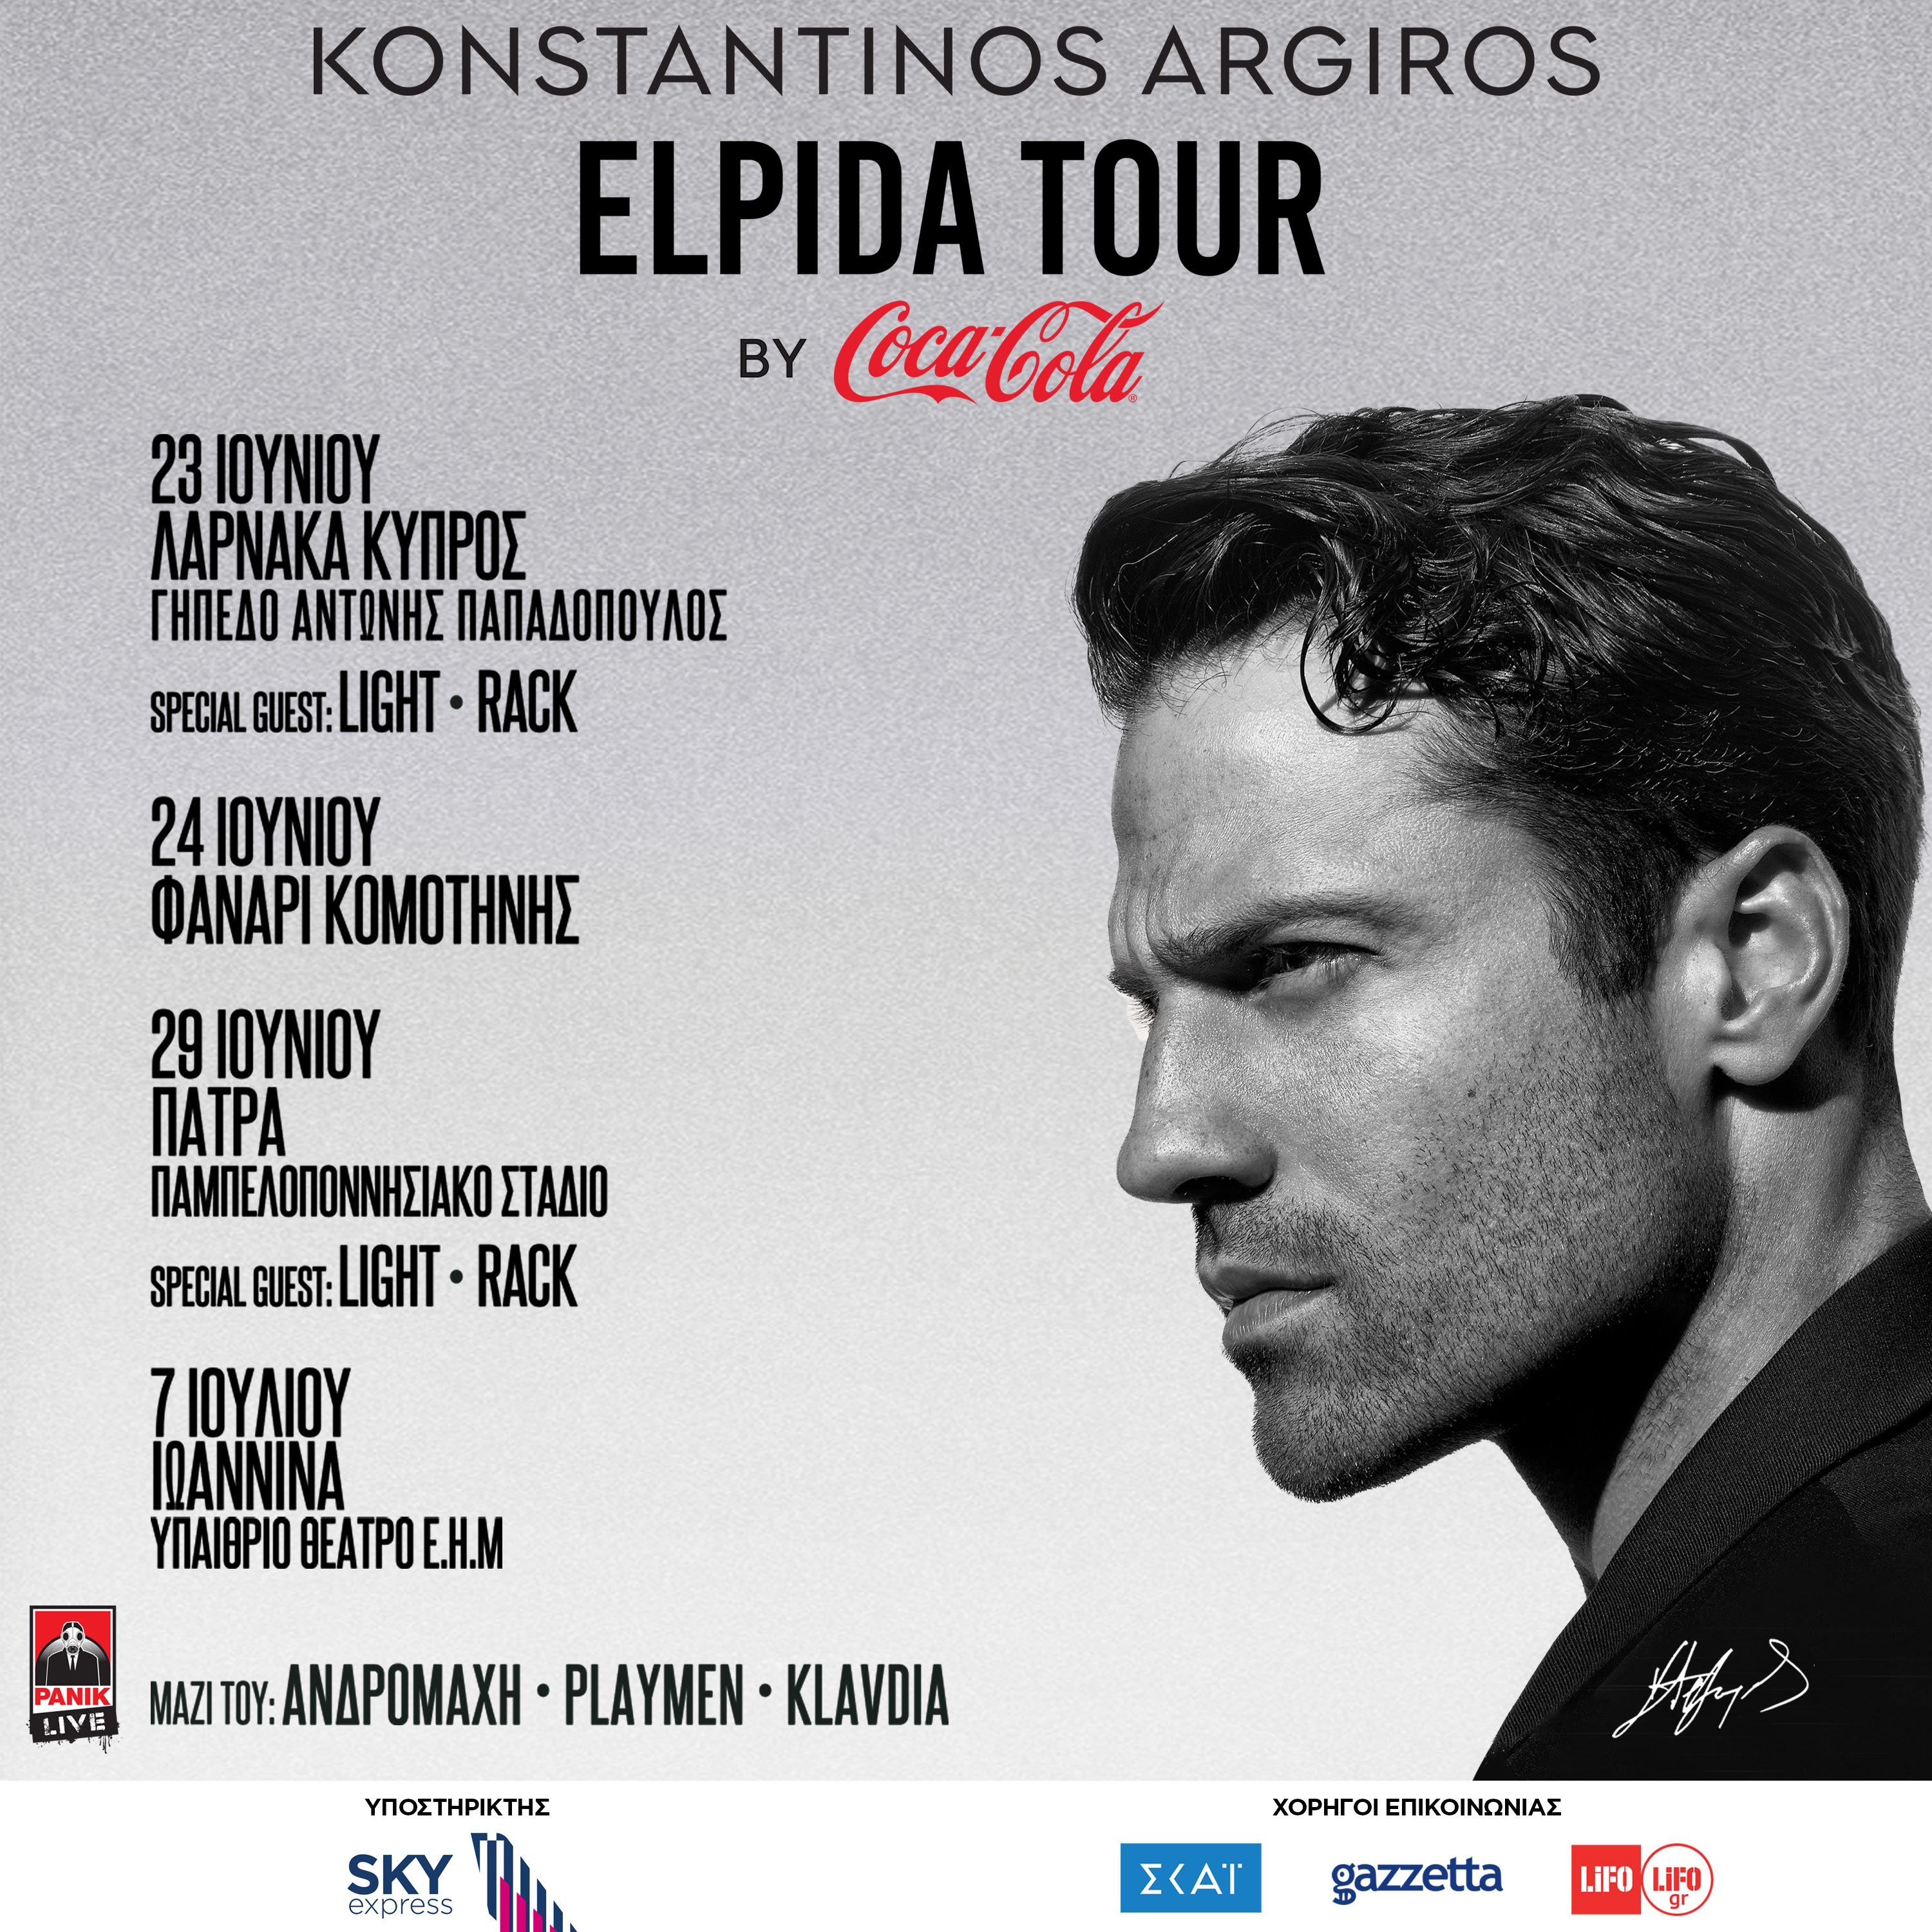 Κωνσταντίνος Αργυρός – «Elpida Tour»: Η φετινή μεγάλη περιοδεία του ξεκινά